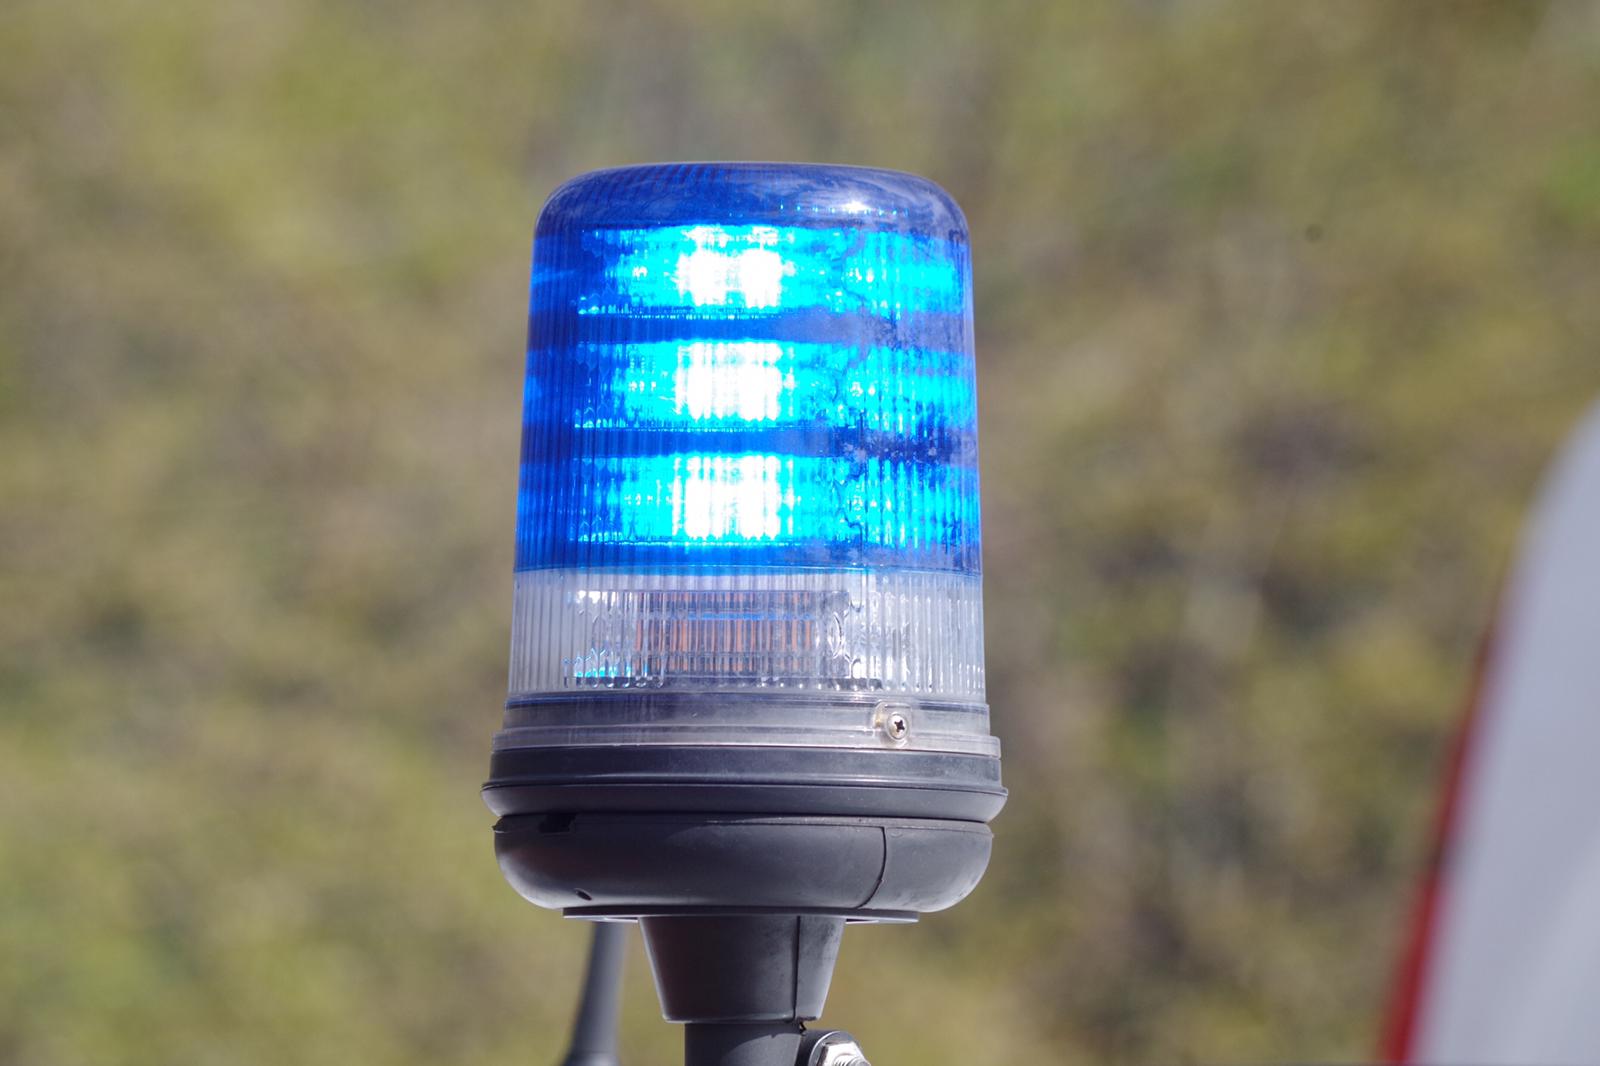 Kamperland - Bestuurder overleden bij frontaal ongeluk met vrachtwagen